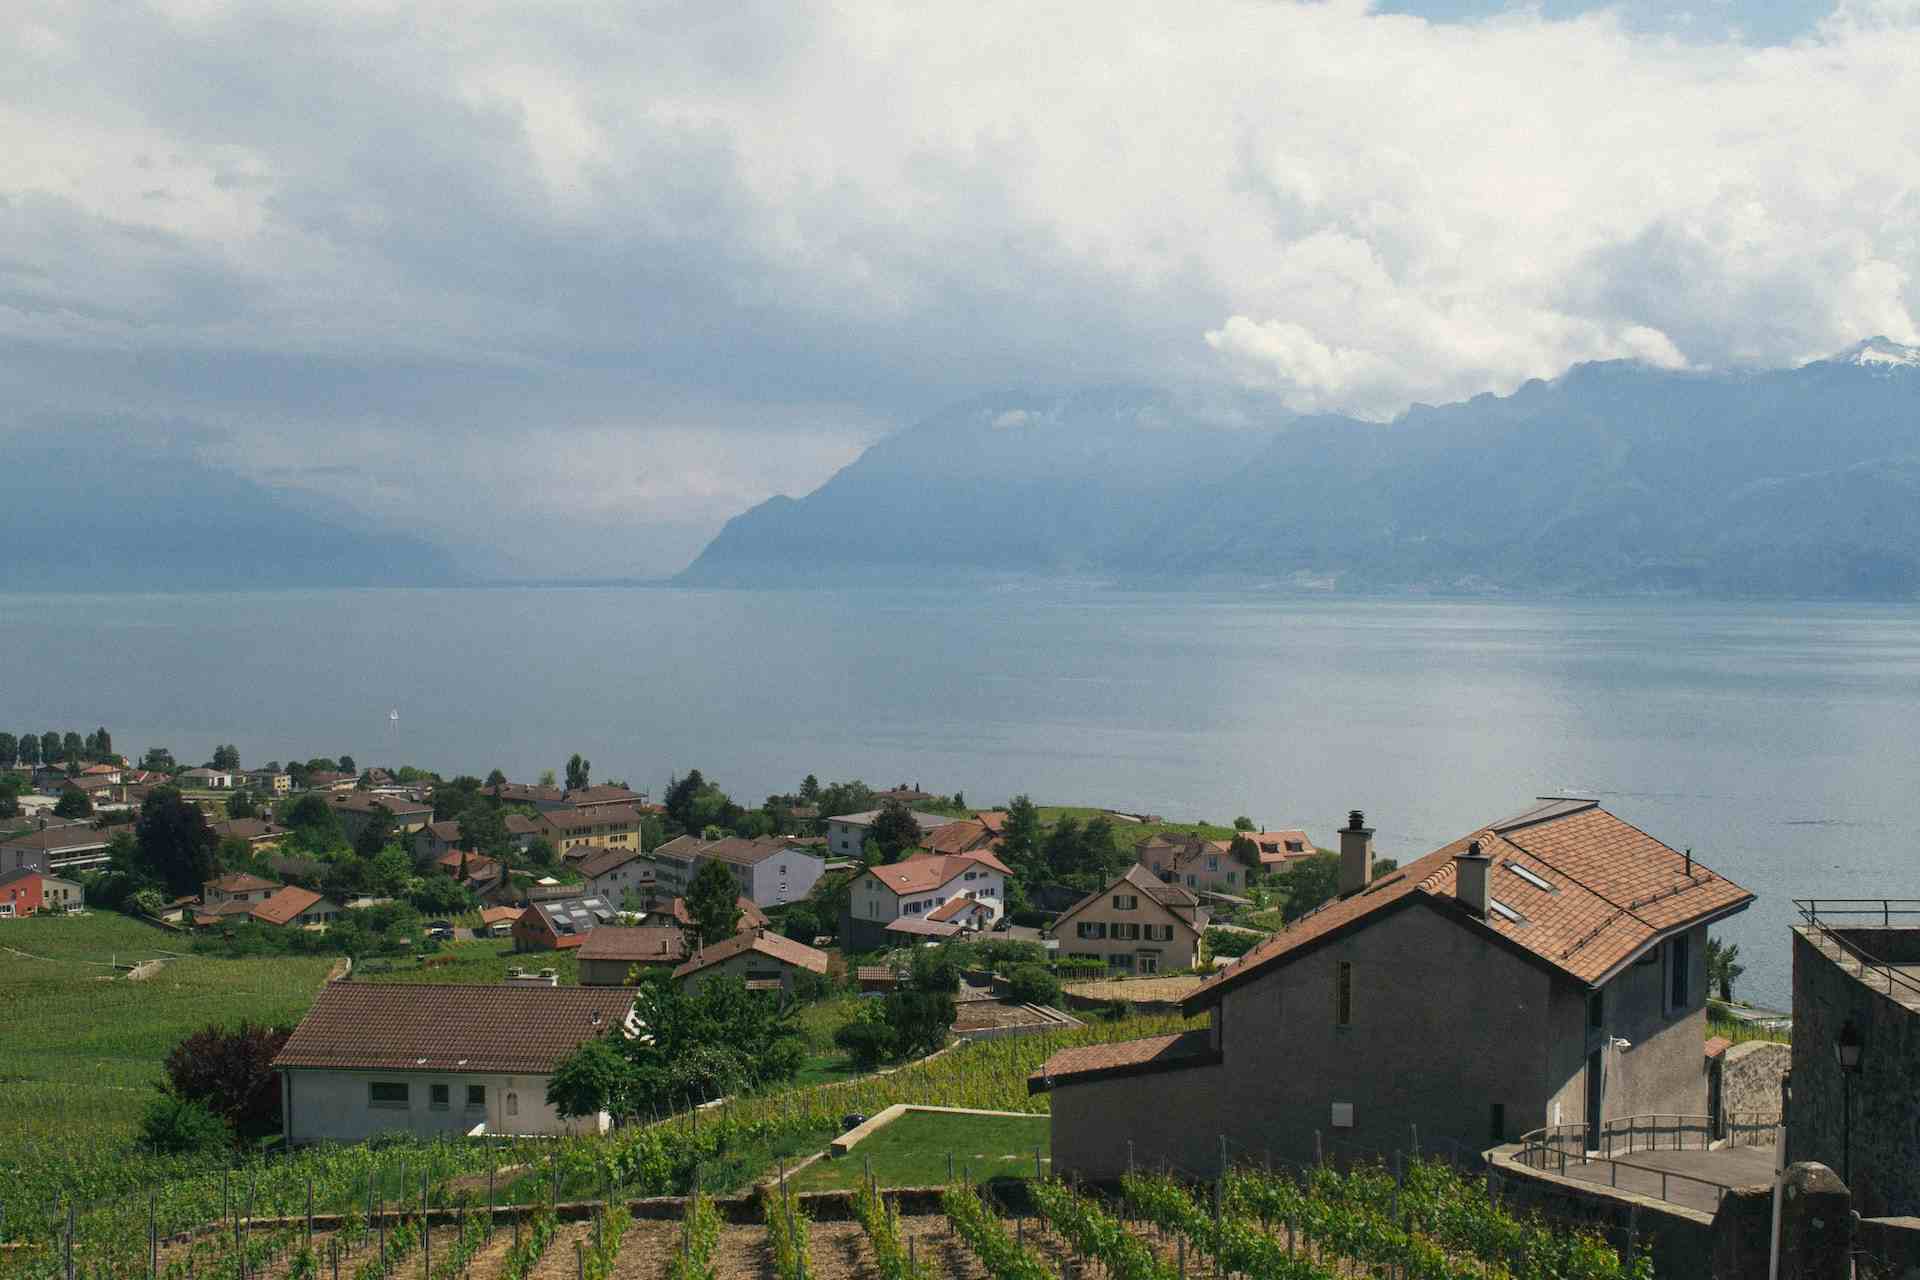 Ferme d'ici, produttore nel Puidoux canton Vaud in Svizzera, | Mimelis